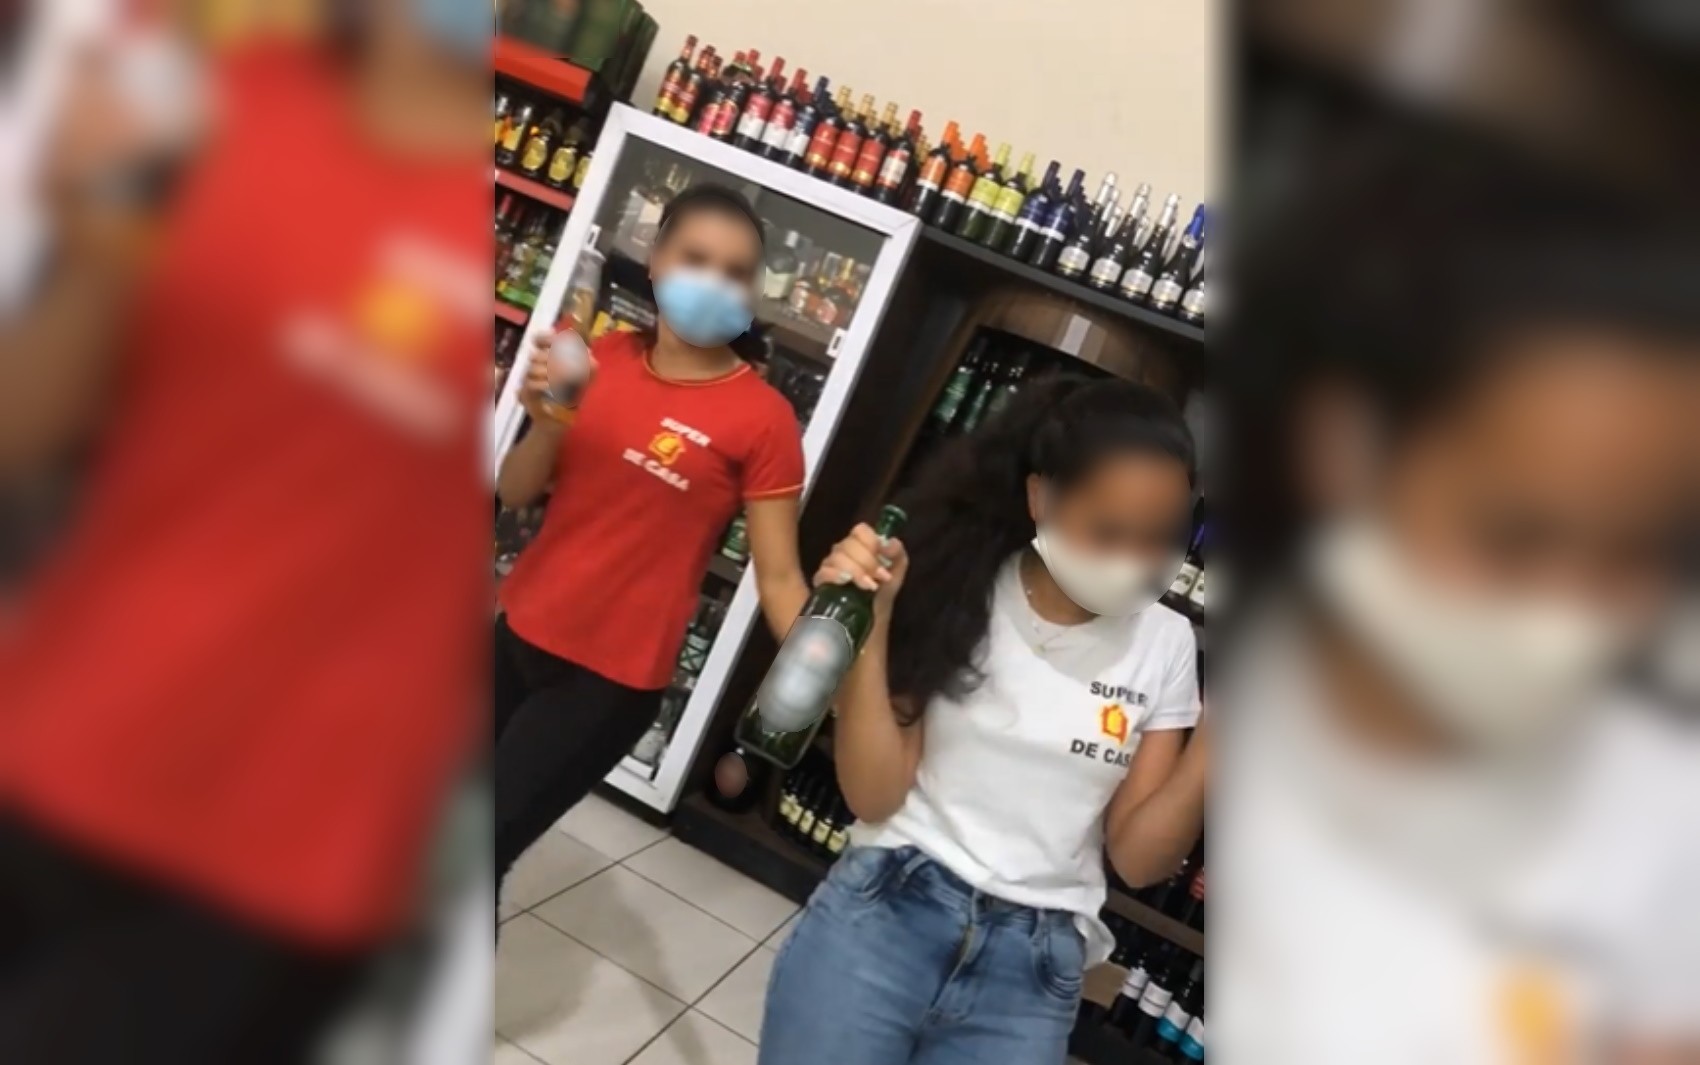 Procon notifica supermercado por exibir propaganda em que adolescentes aparecem com bebidas alcoólicas